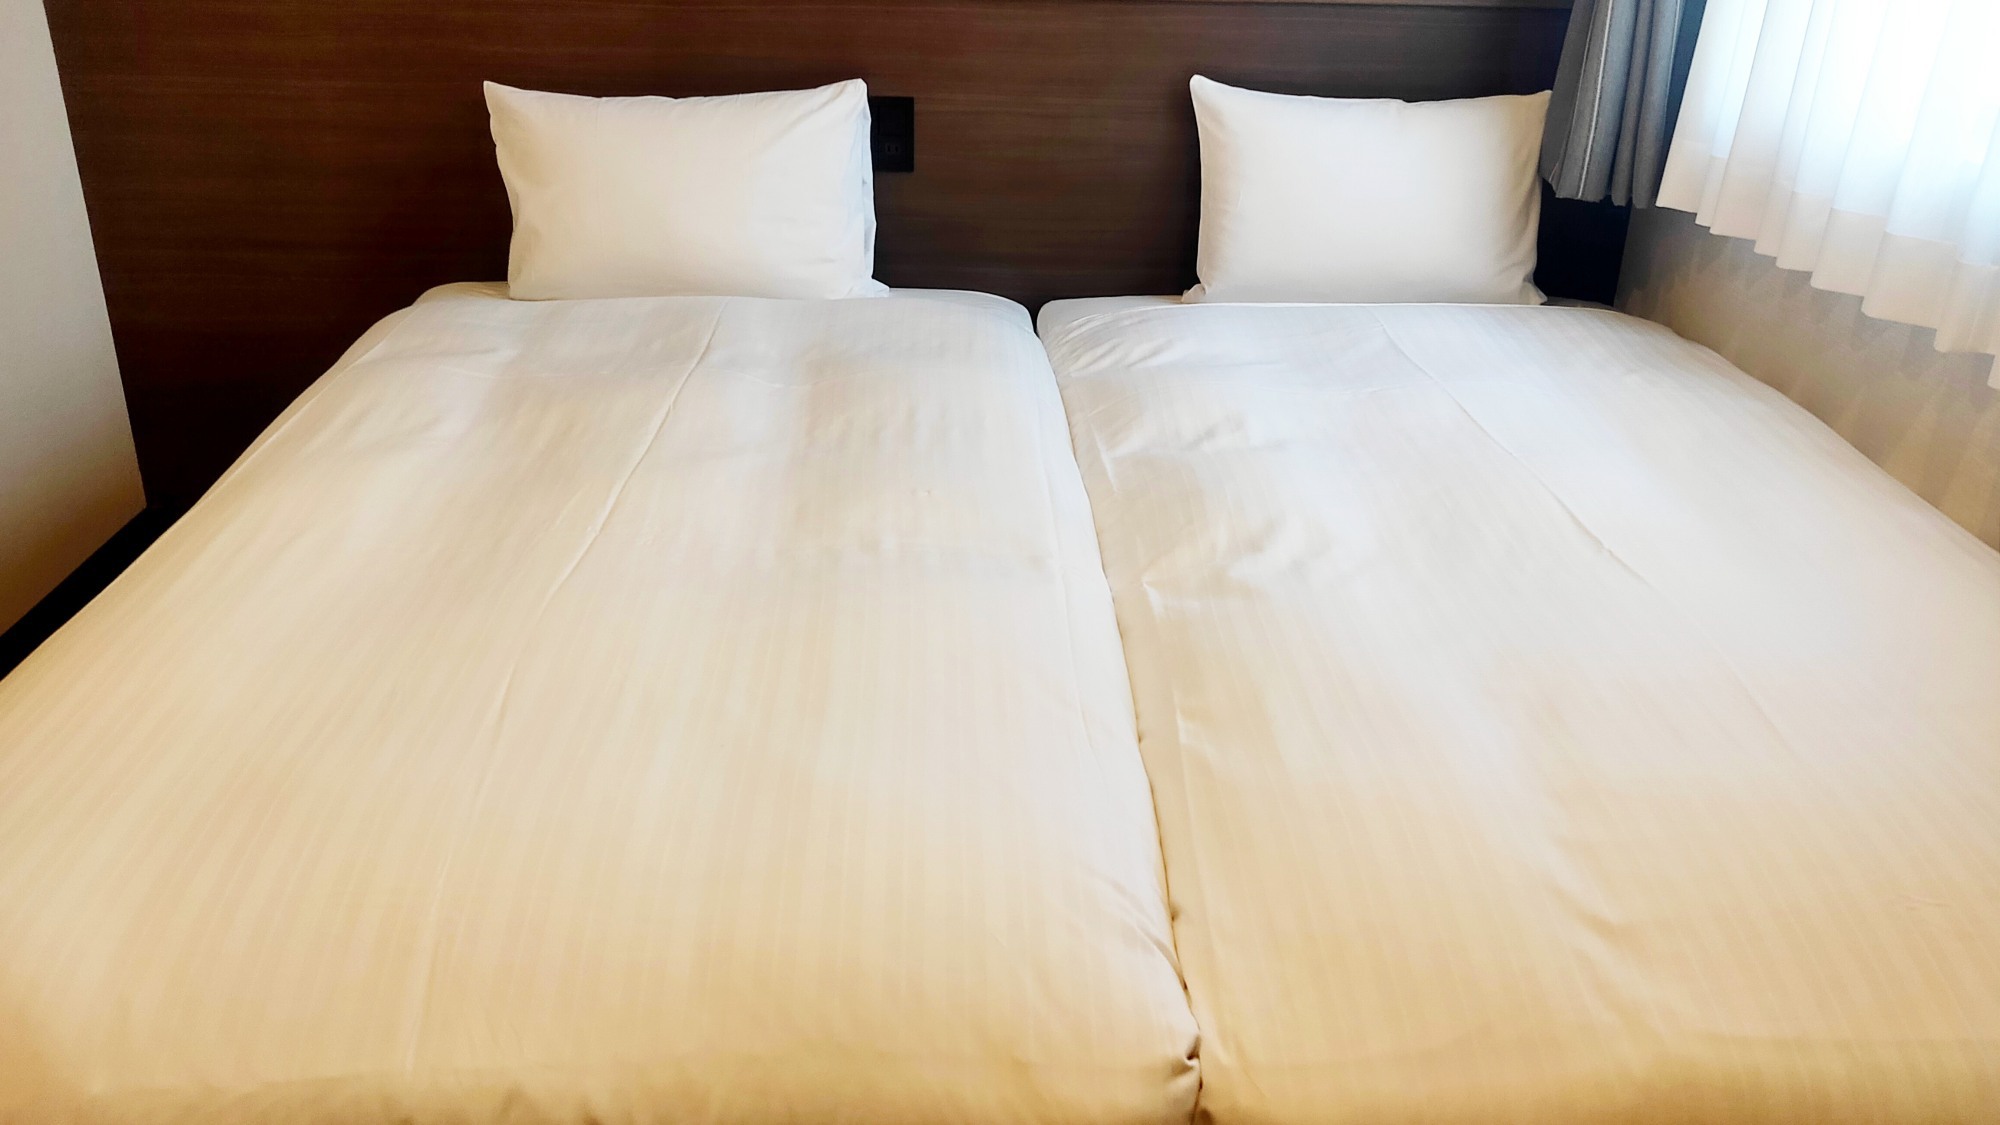 スタンダードツイン(100サイズベッド)ベッドをくっつけてハリウッドツインとして利用する事も可能